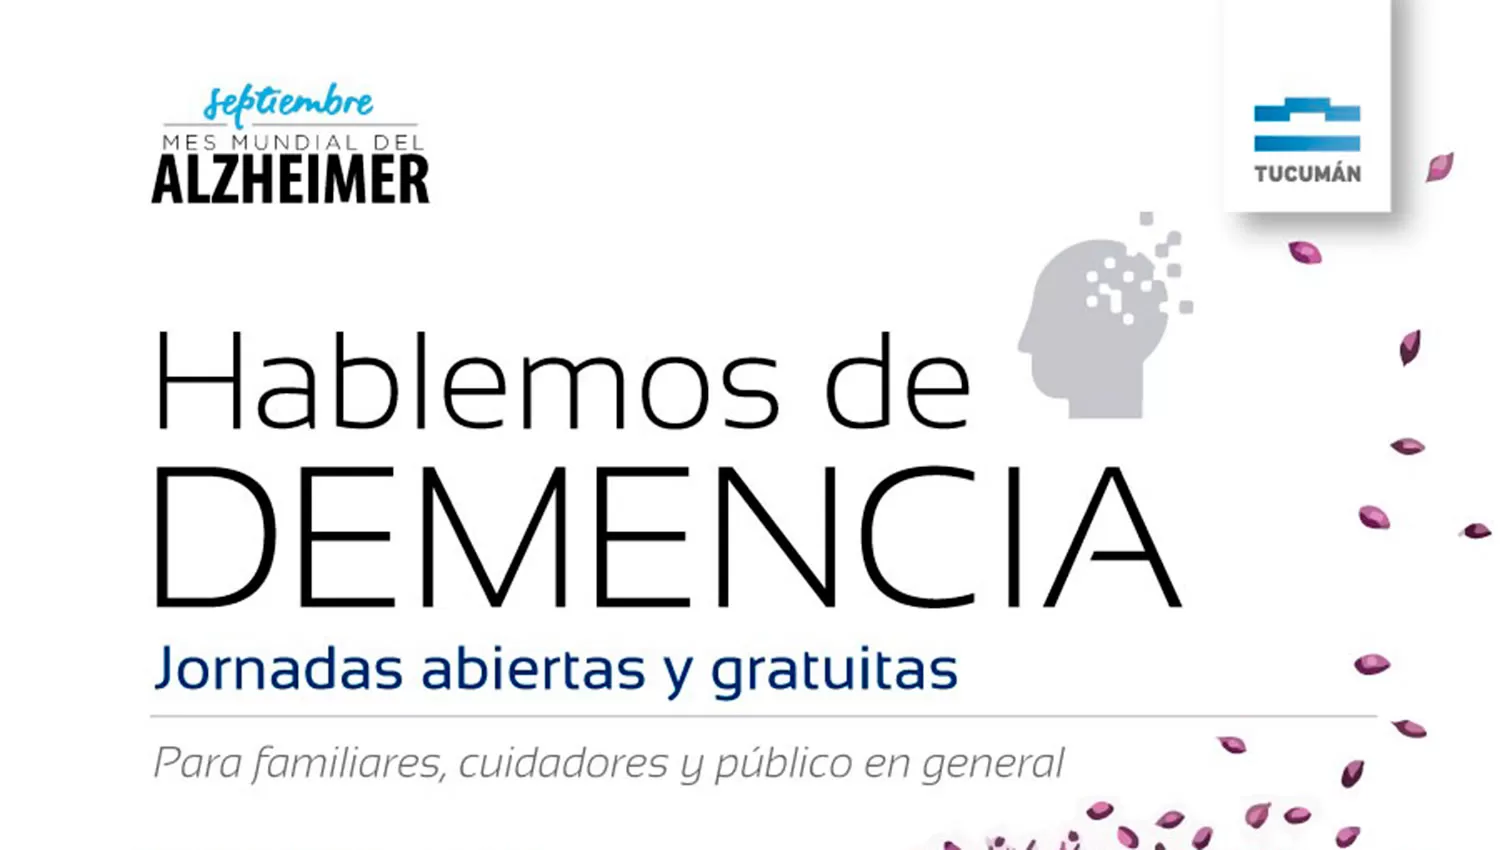 Hablemos de Demencia: jornadas abiertas y gratuitas por el Mes Mundial del Alzheimer